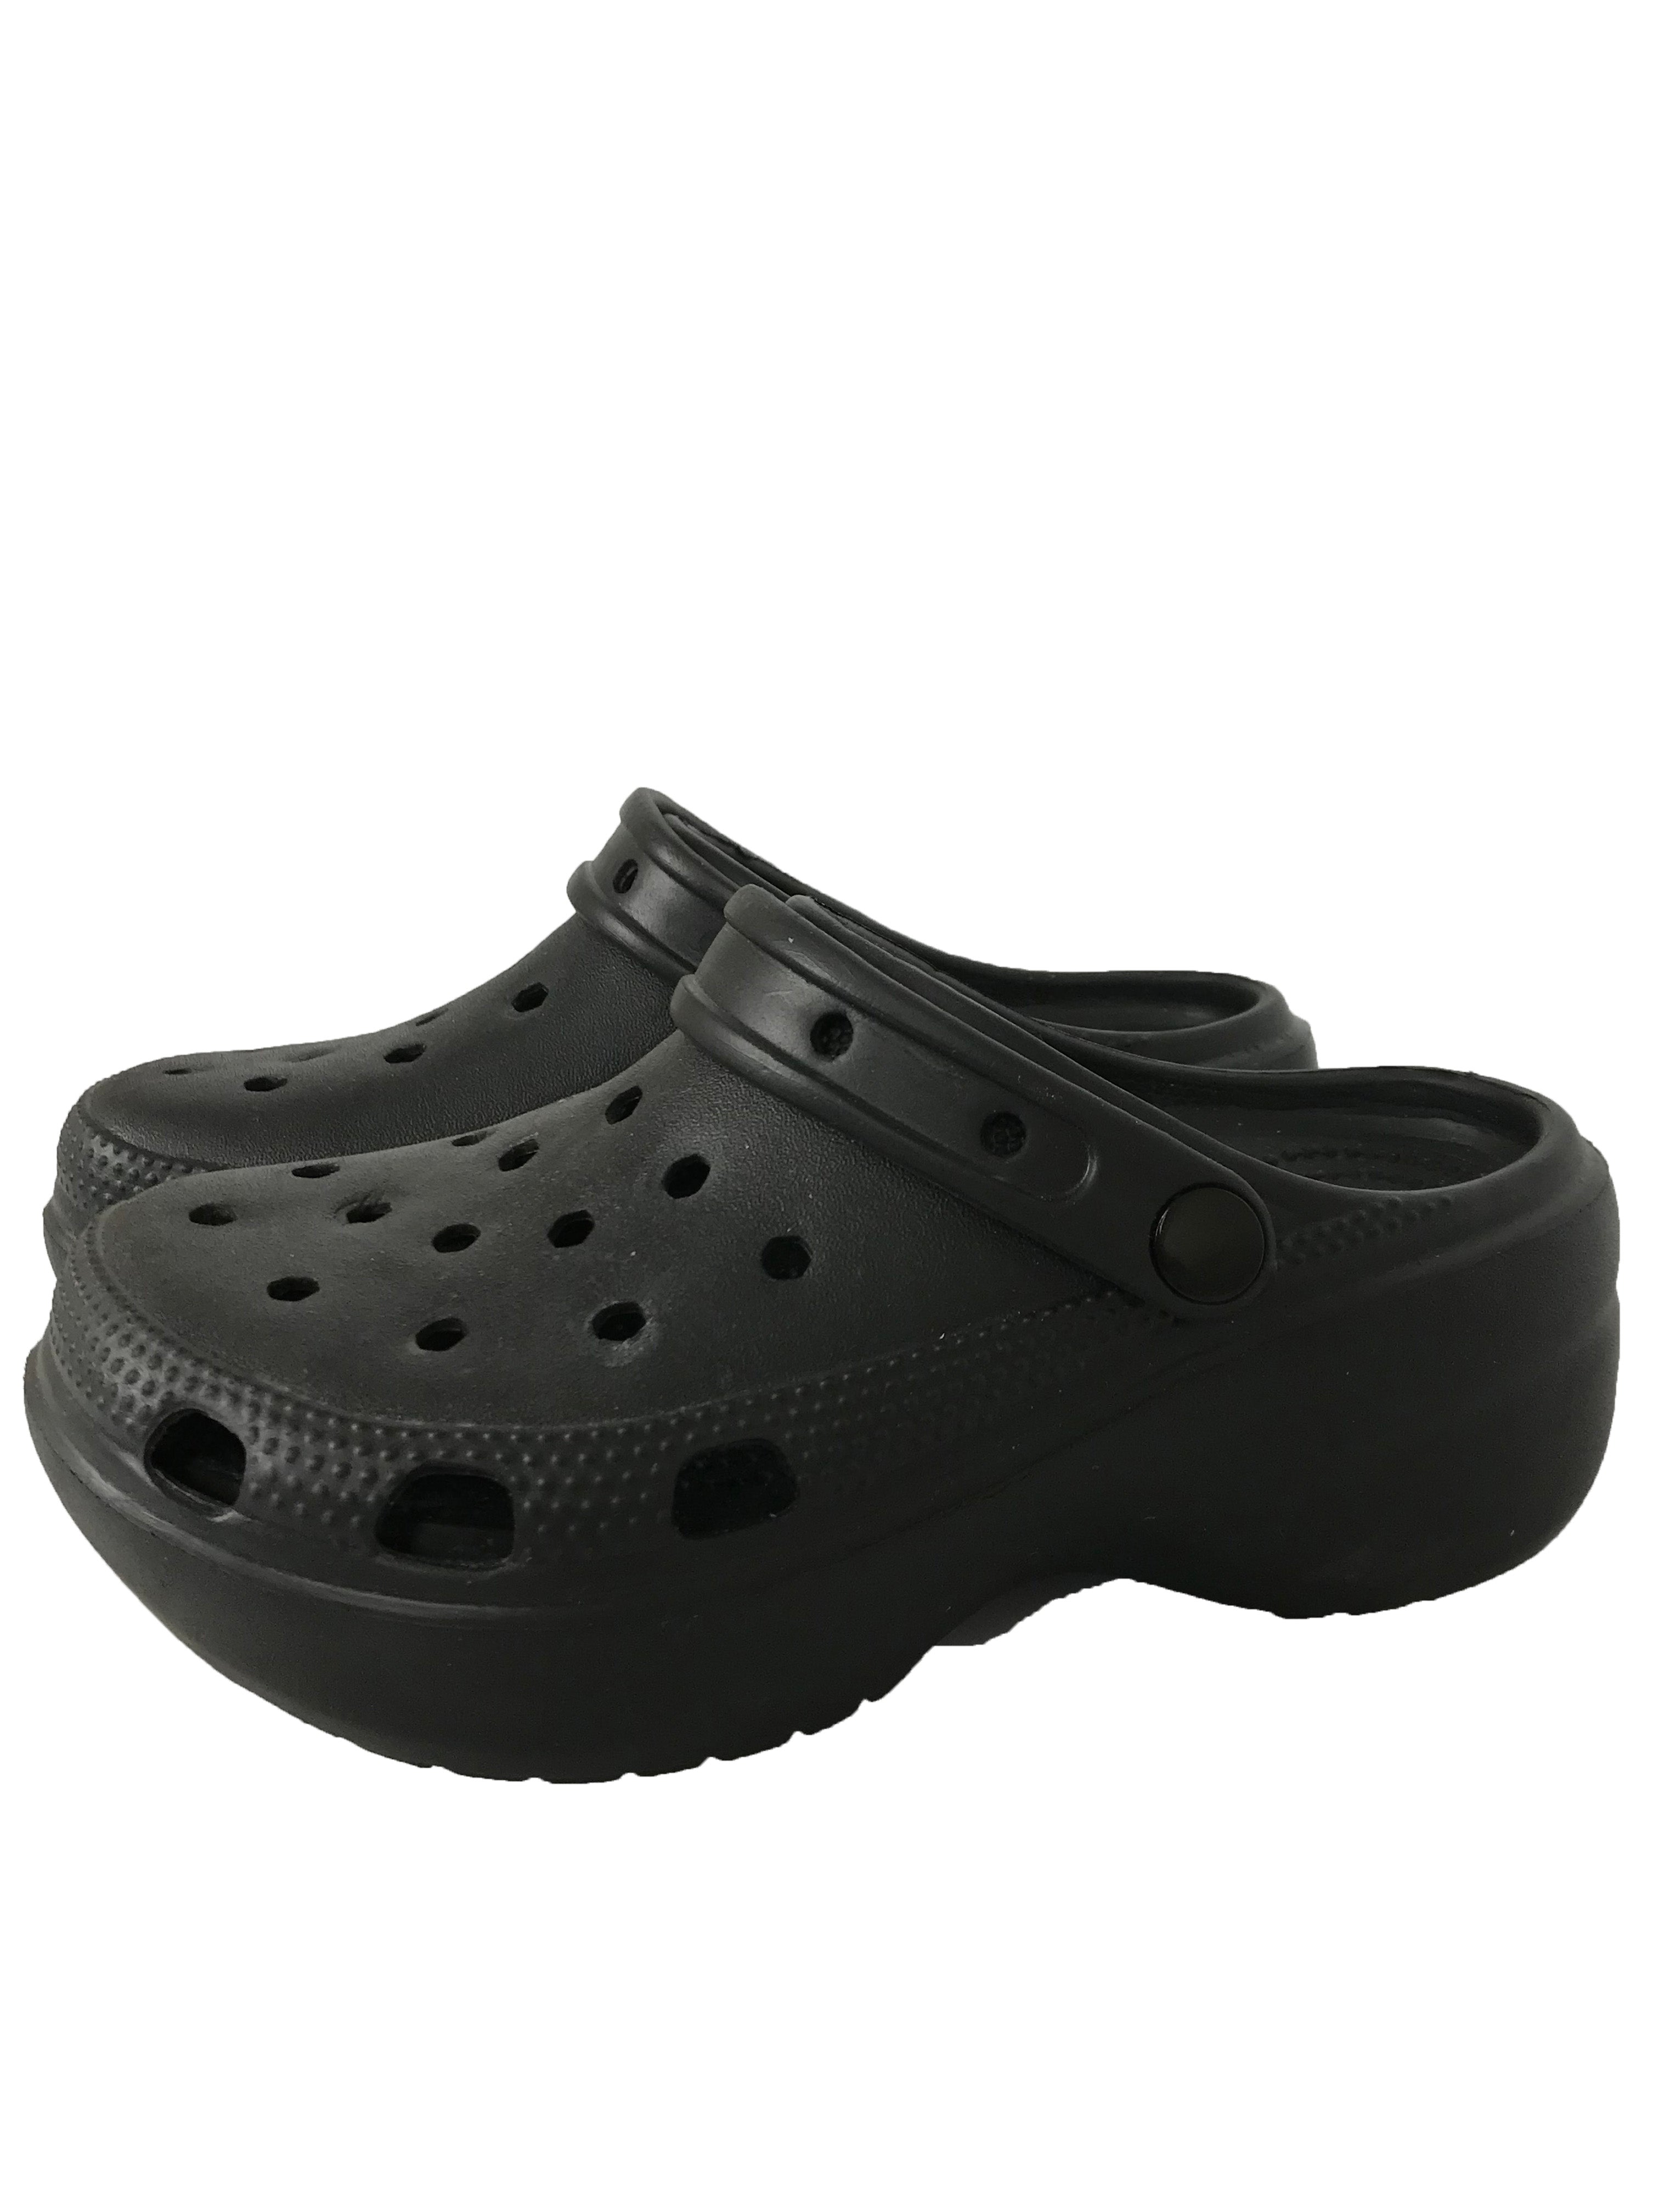 Crocs Black Platform Shoes Women's Size 6.5